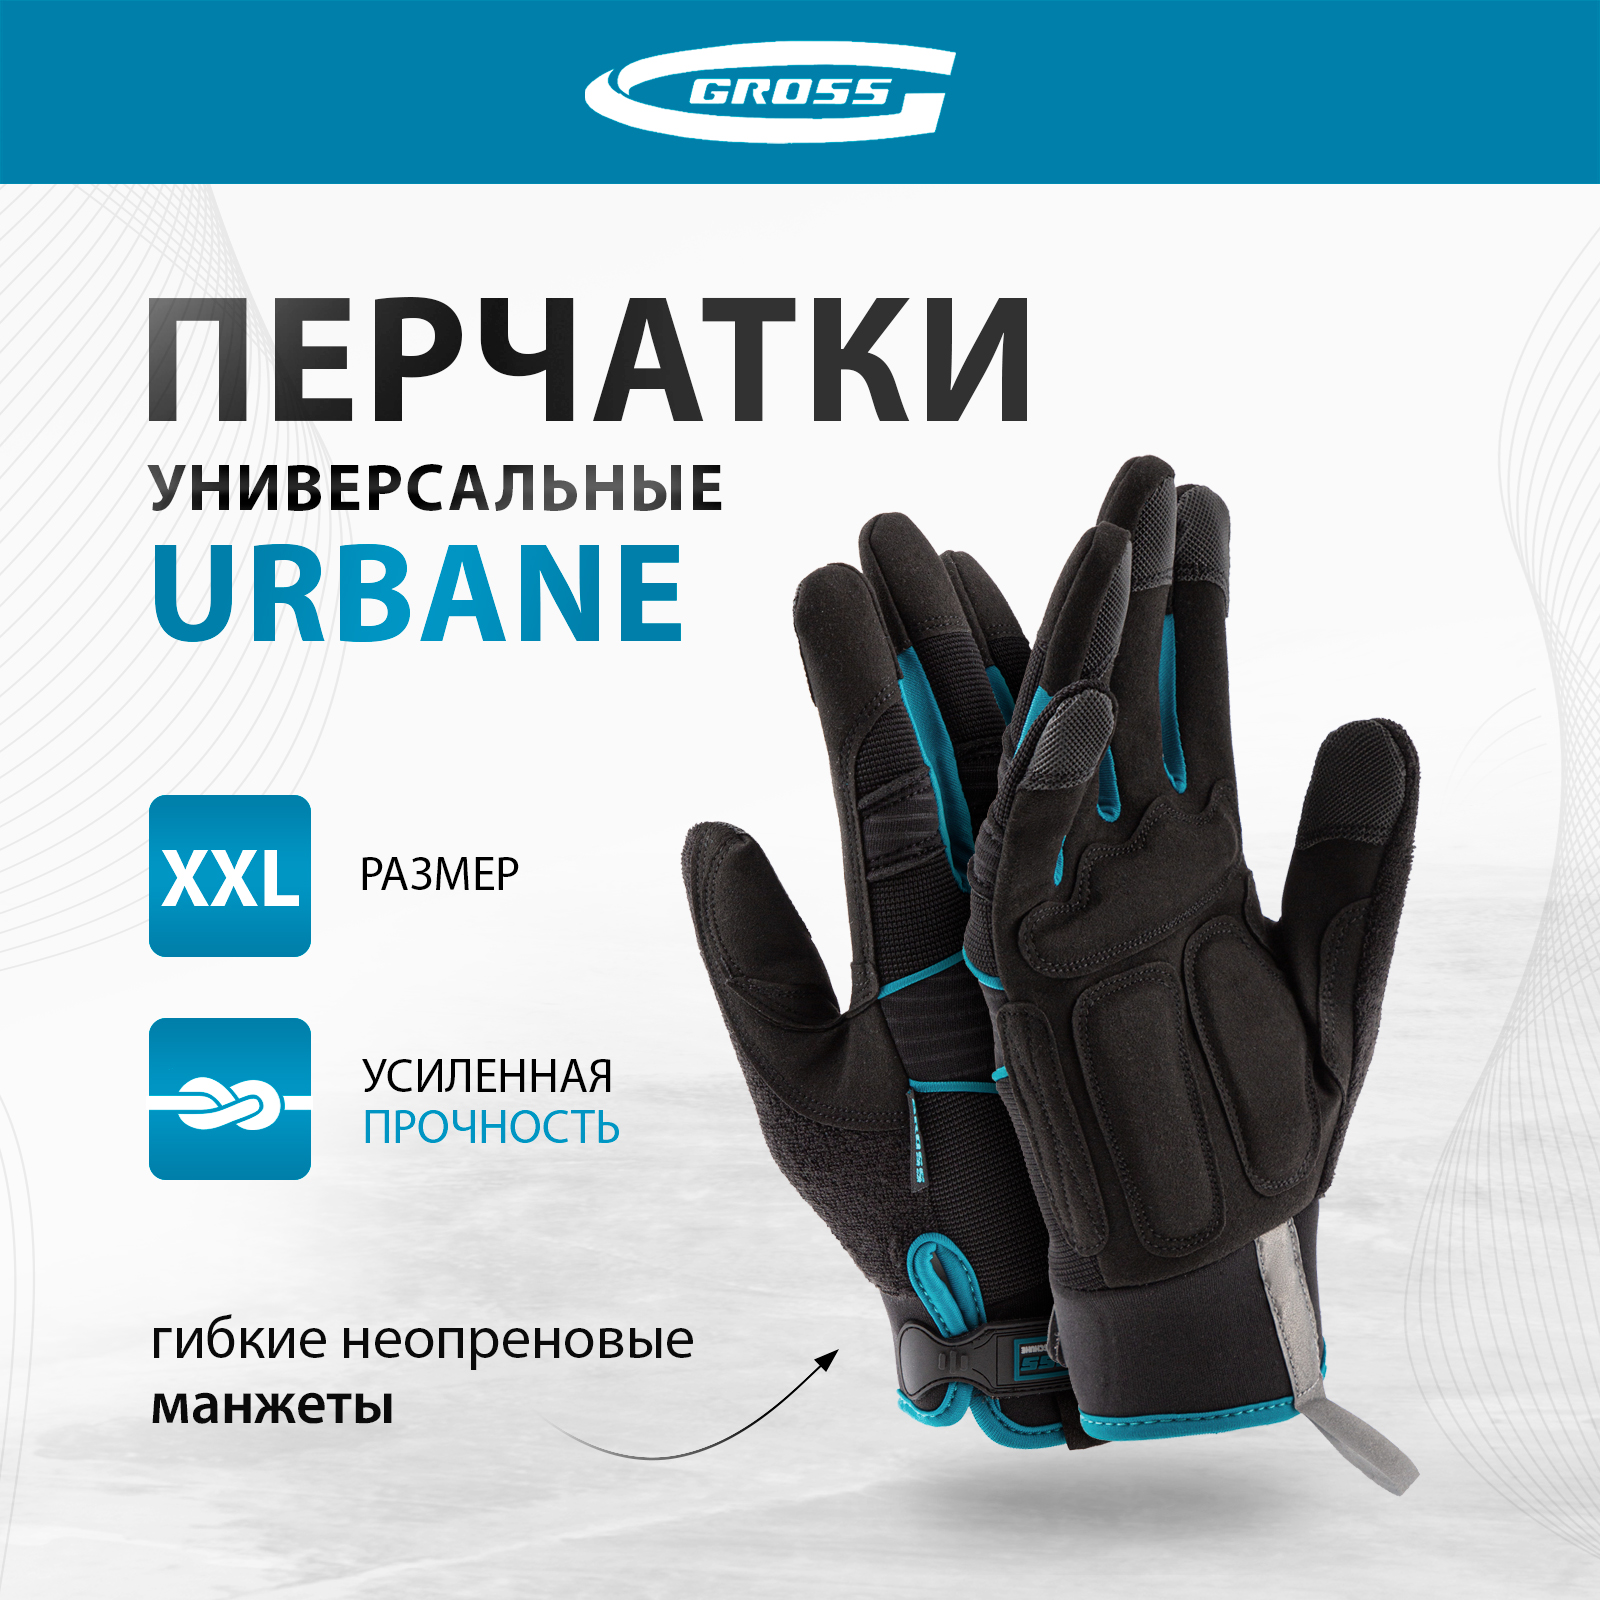 Перчатки универсальные комбинированные GROSS URBANE размер XL (10) 90313 комбинированные облегченные перчатки gross